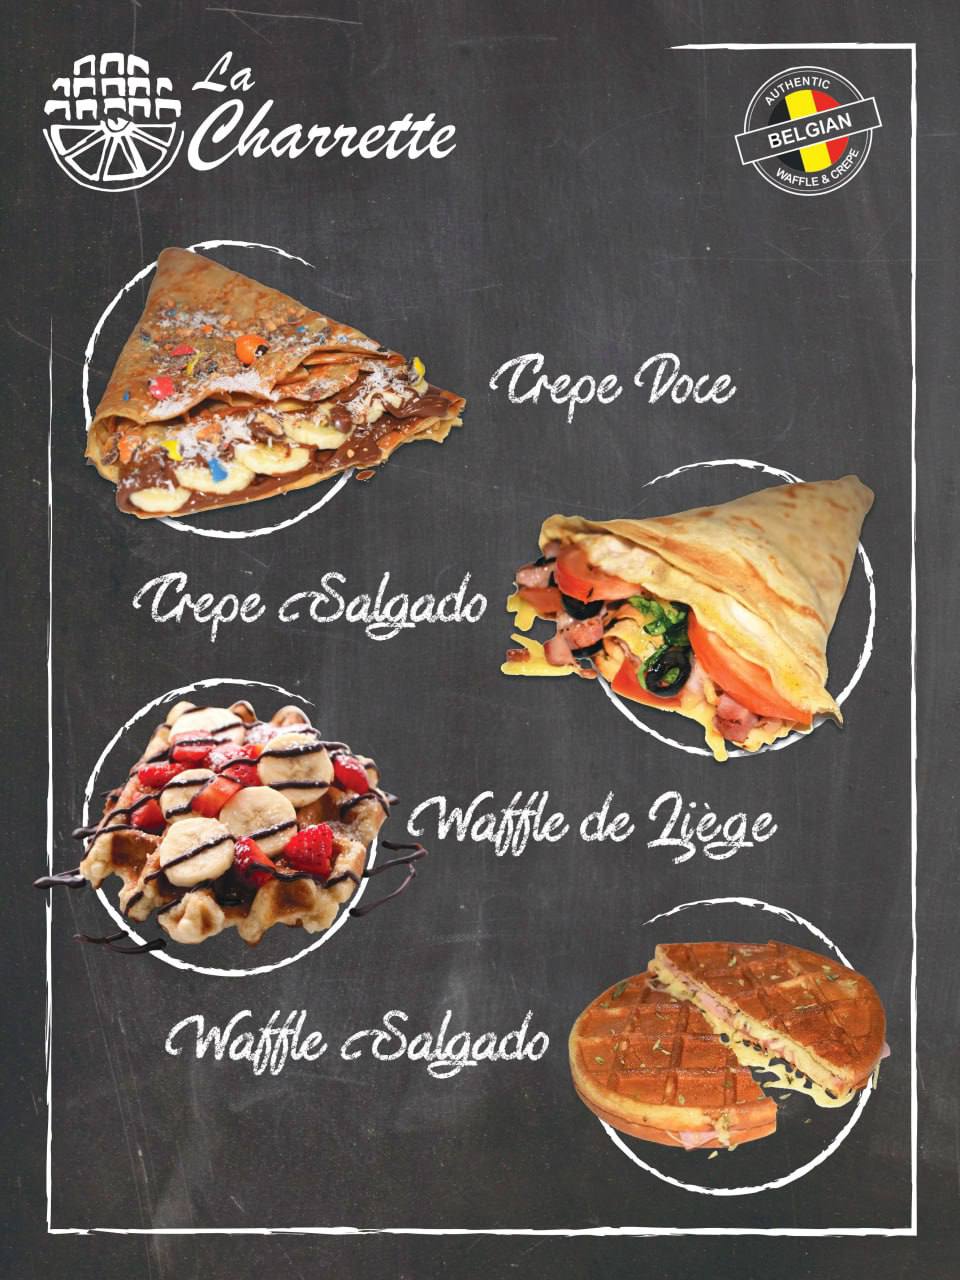 La Charrette - Crepes & Waffles - Alenquer - Catering de Festas e Eventos